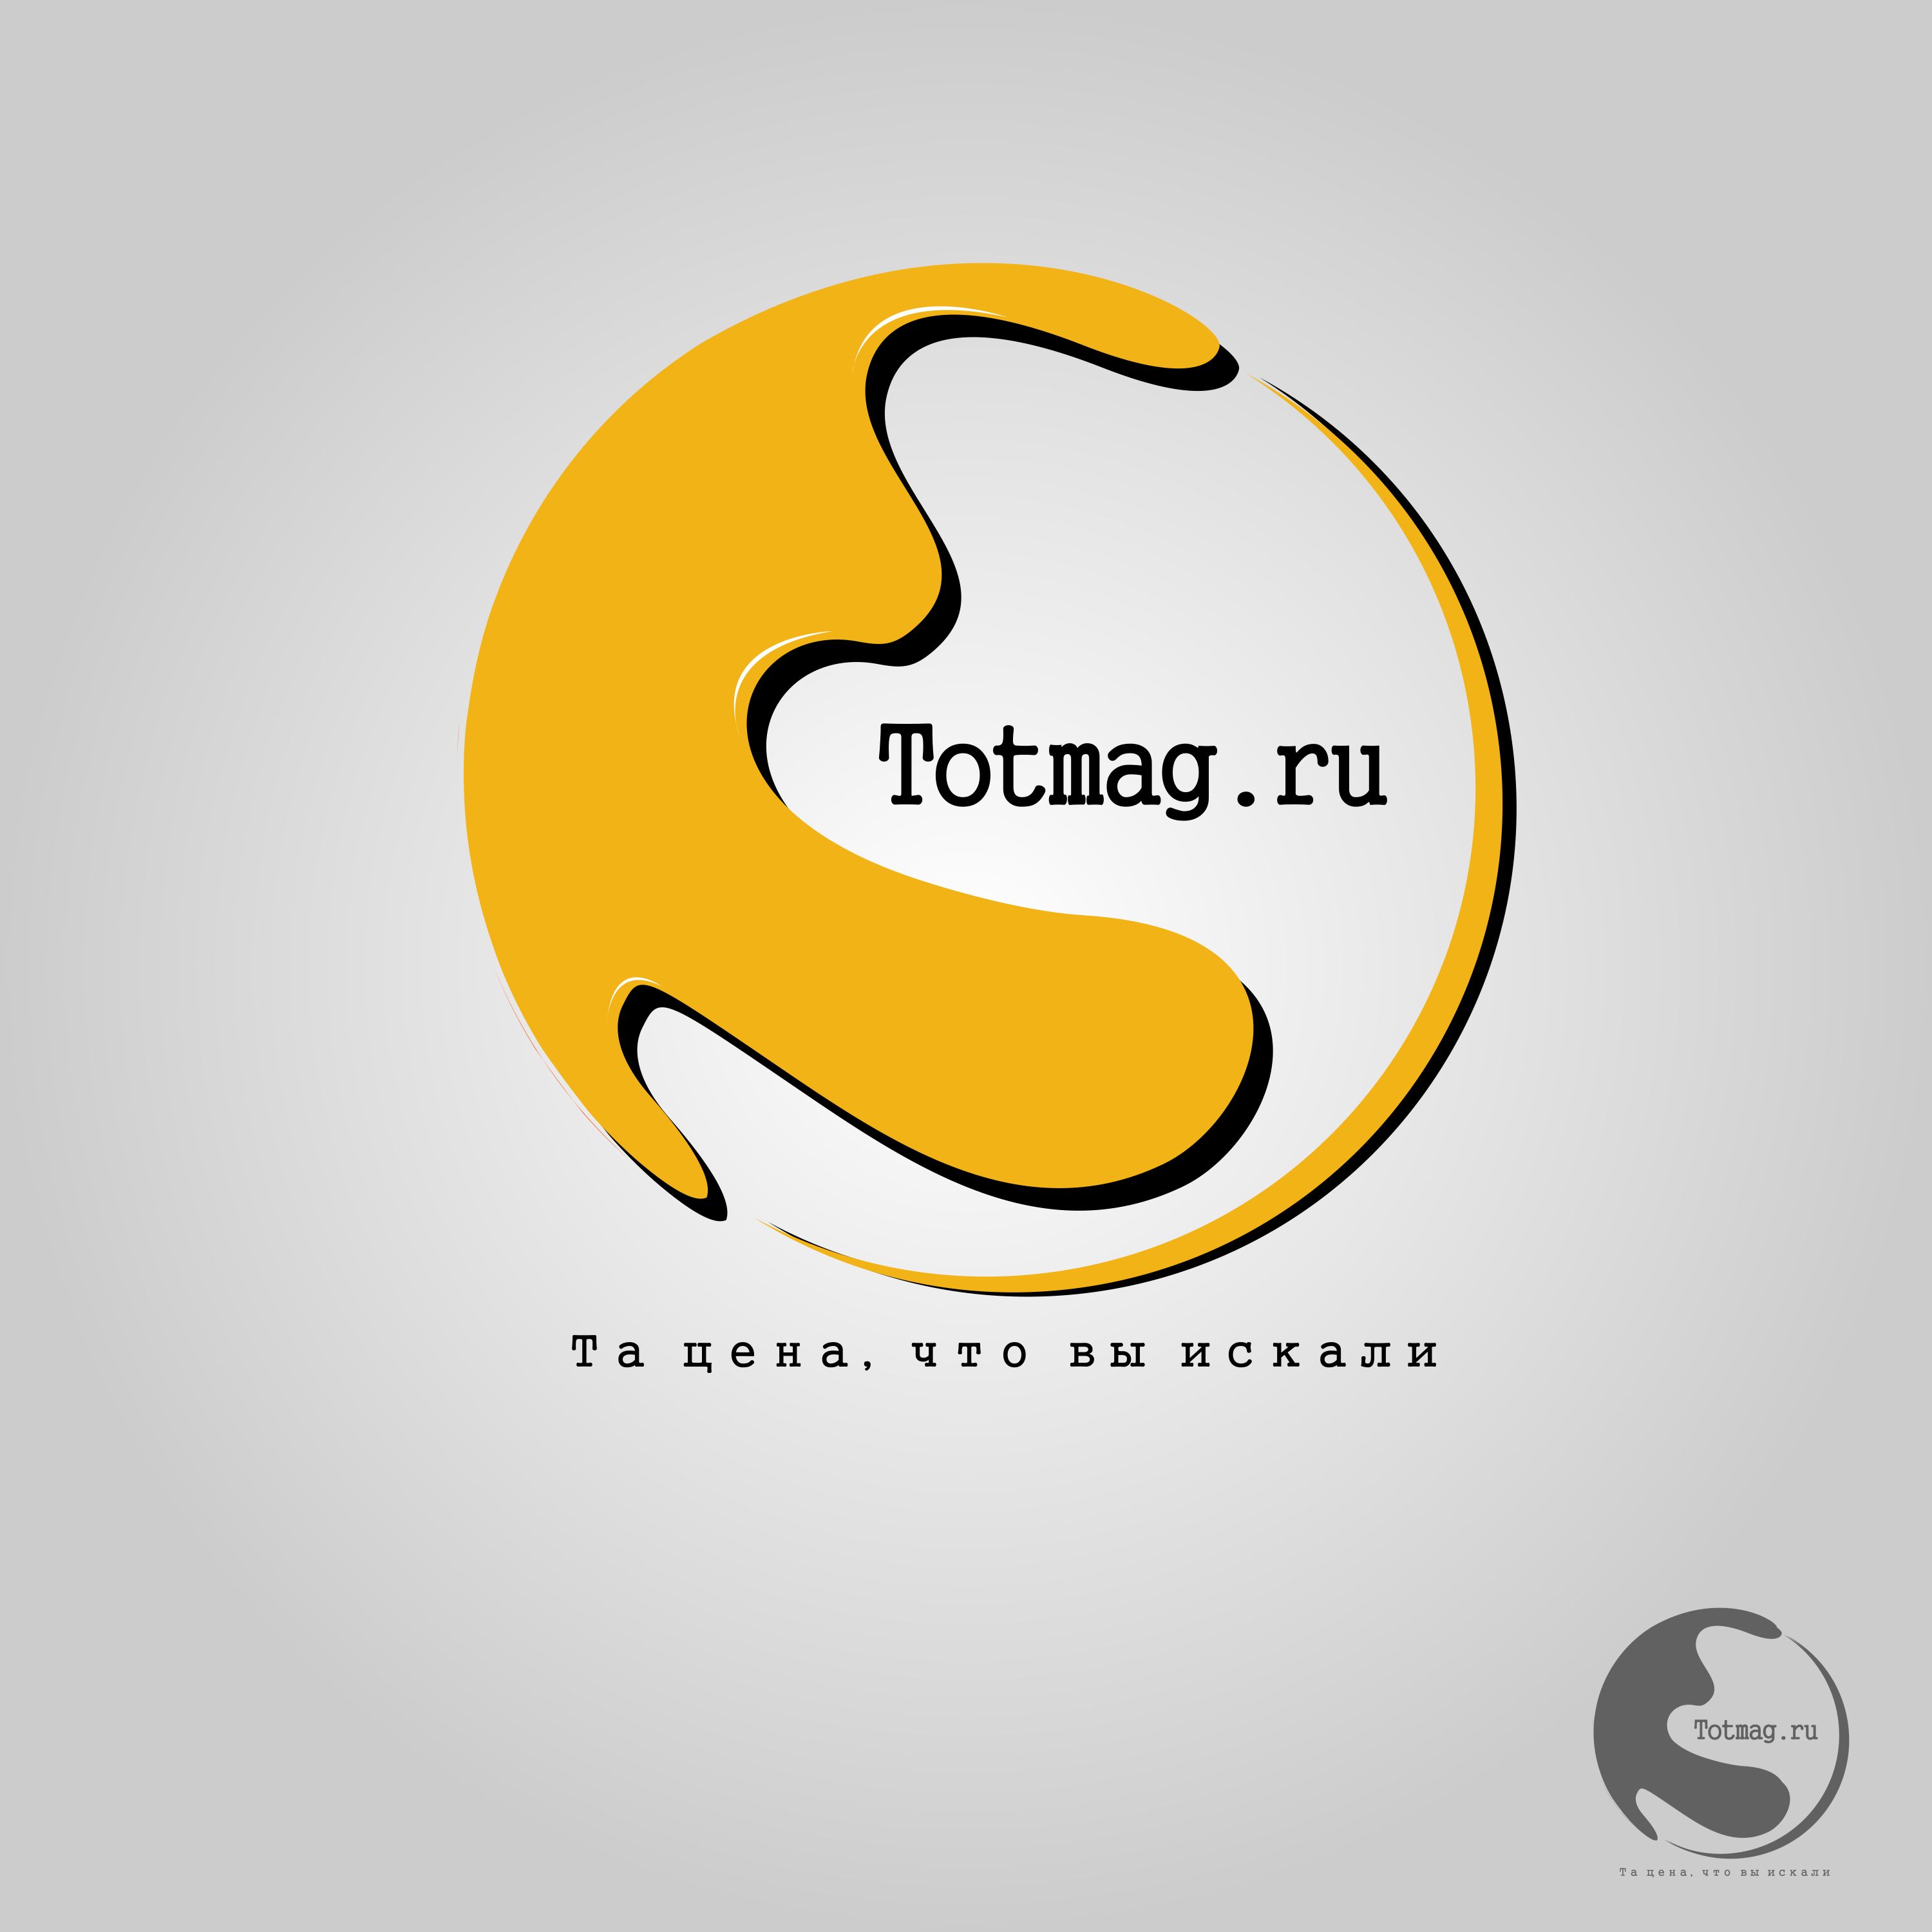 Логотип для интернет магазина totmag.ru - дизайнер Artfoth